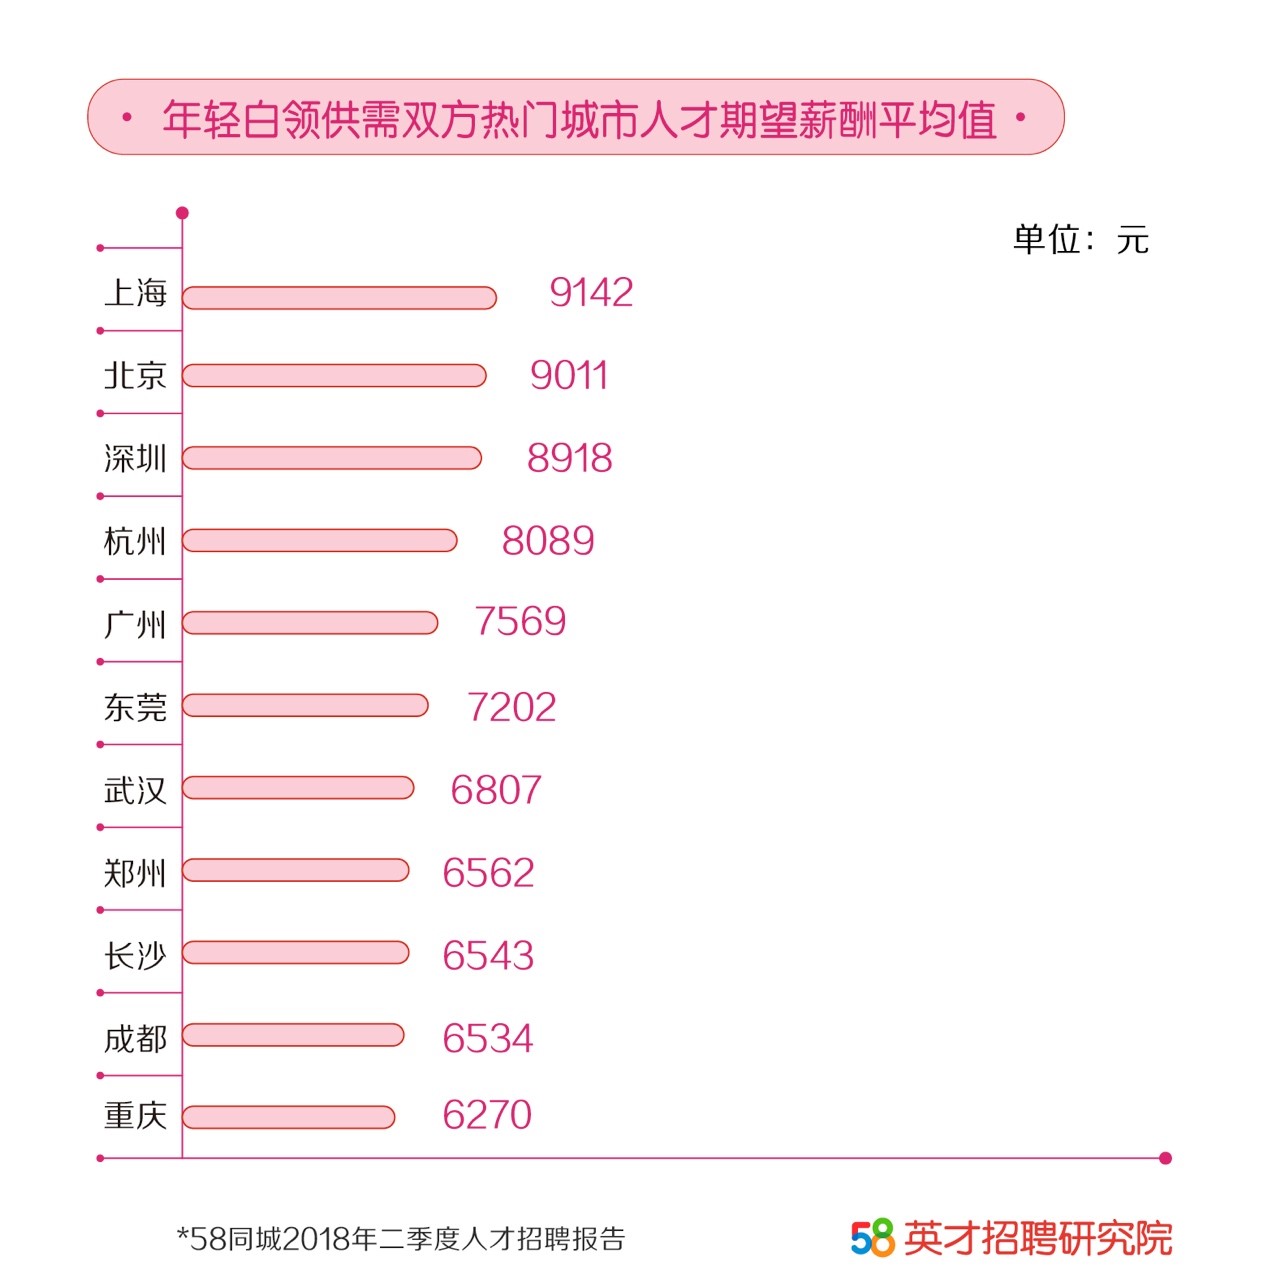 58同城发布二季度人才报告： 年轻白领期望薪资高达9142元，上海深圳杭州平均薪资排前三